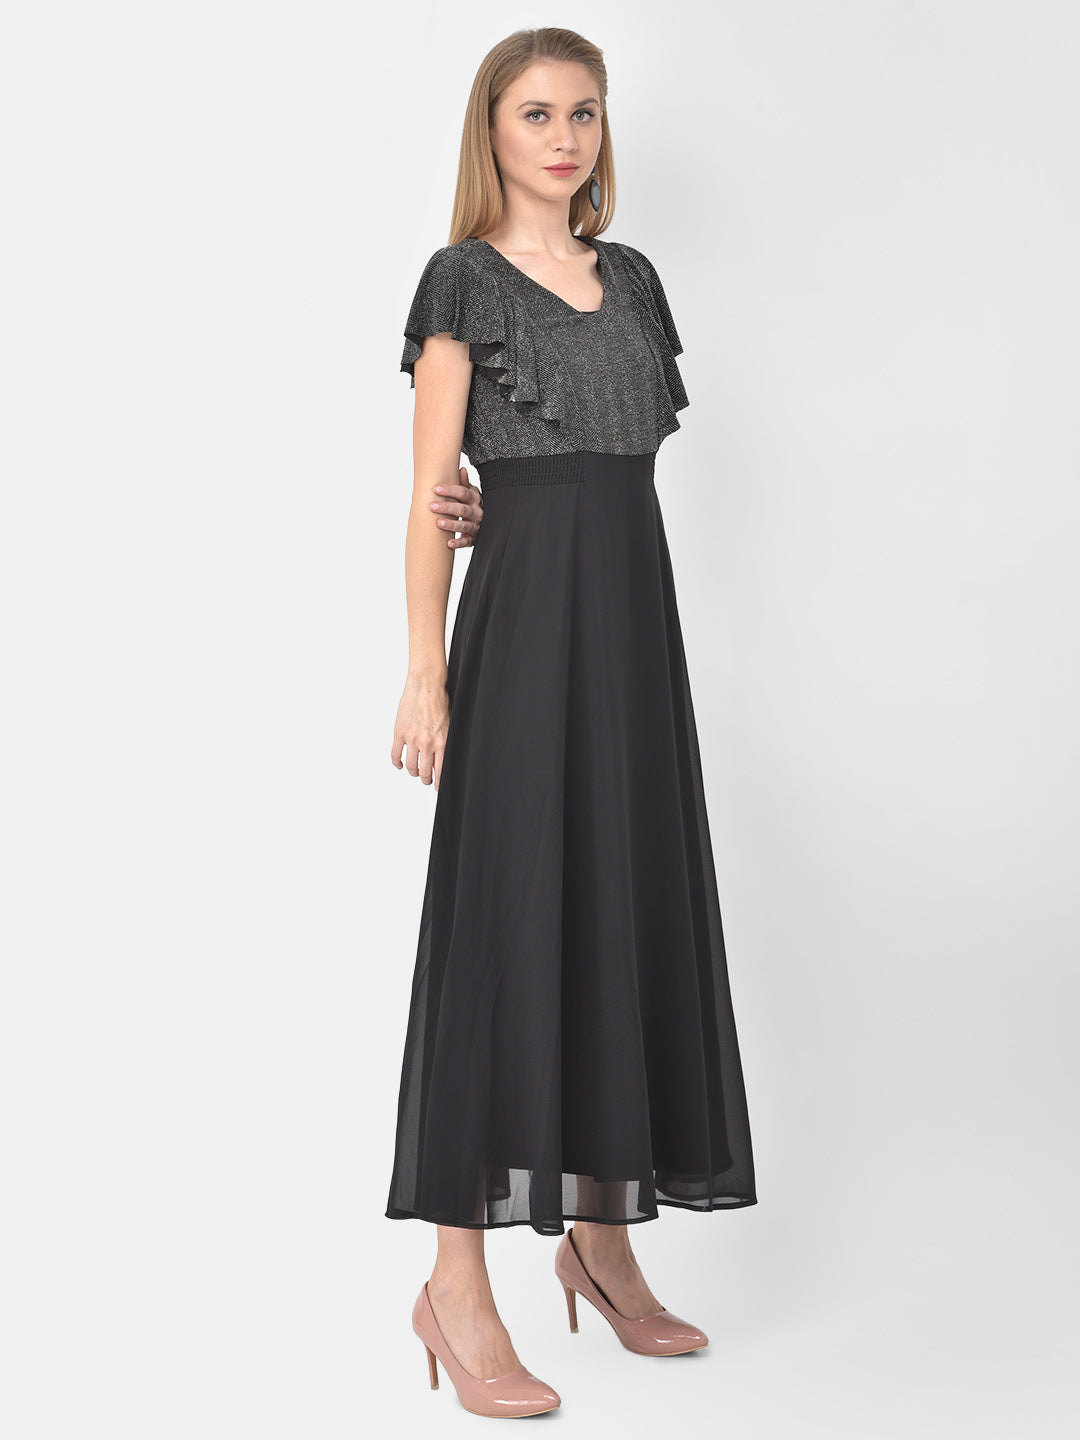 Black Cap Sleeve Maxi Polyester Dress